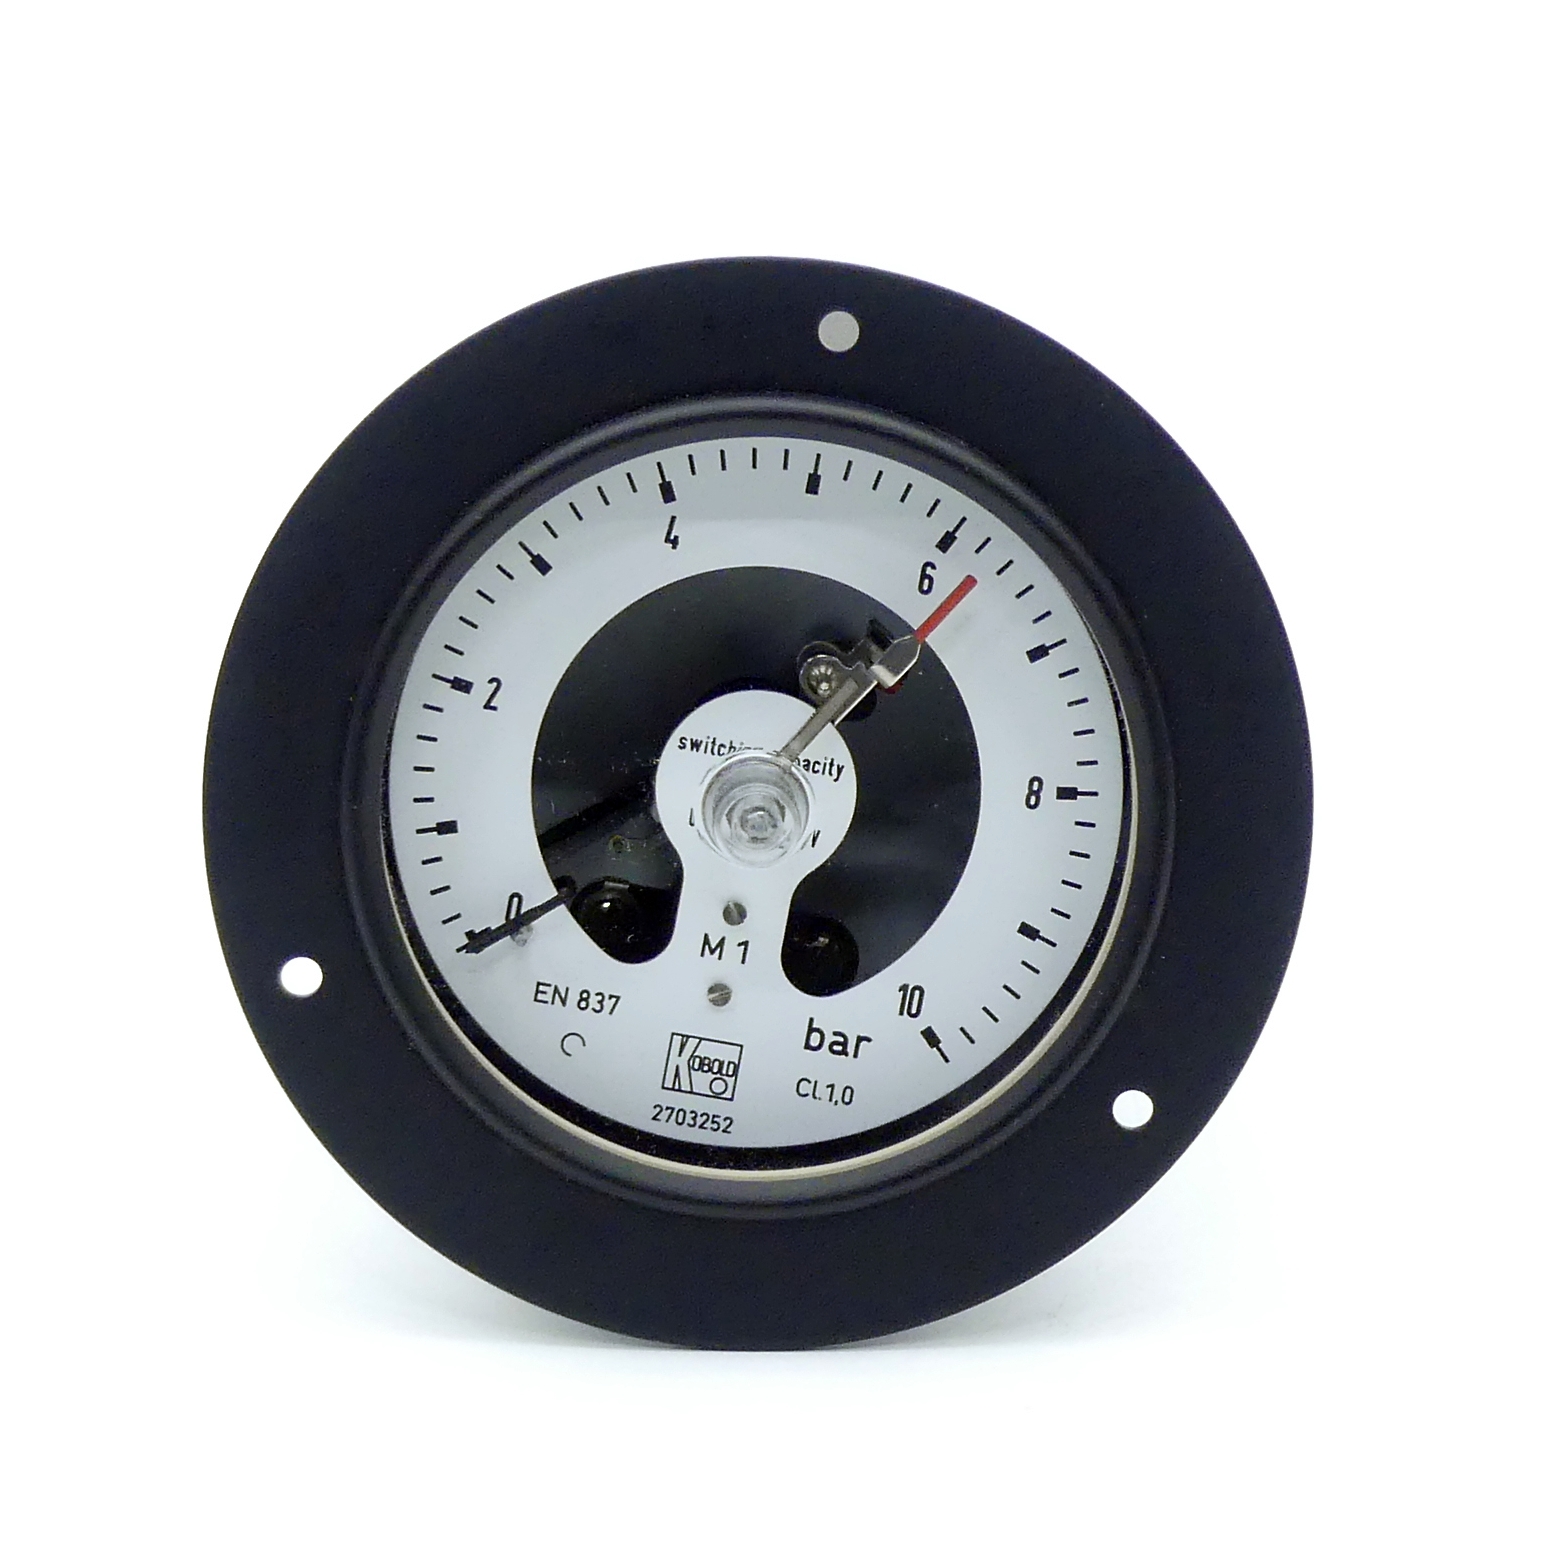 Contact pressure gauge 